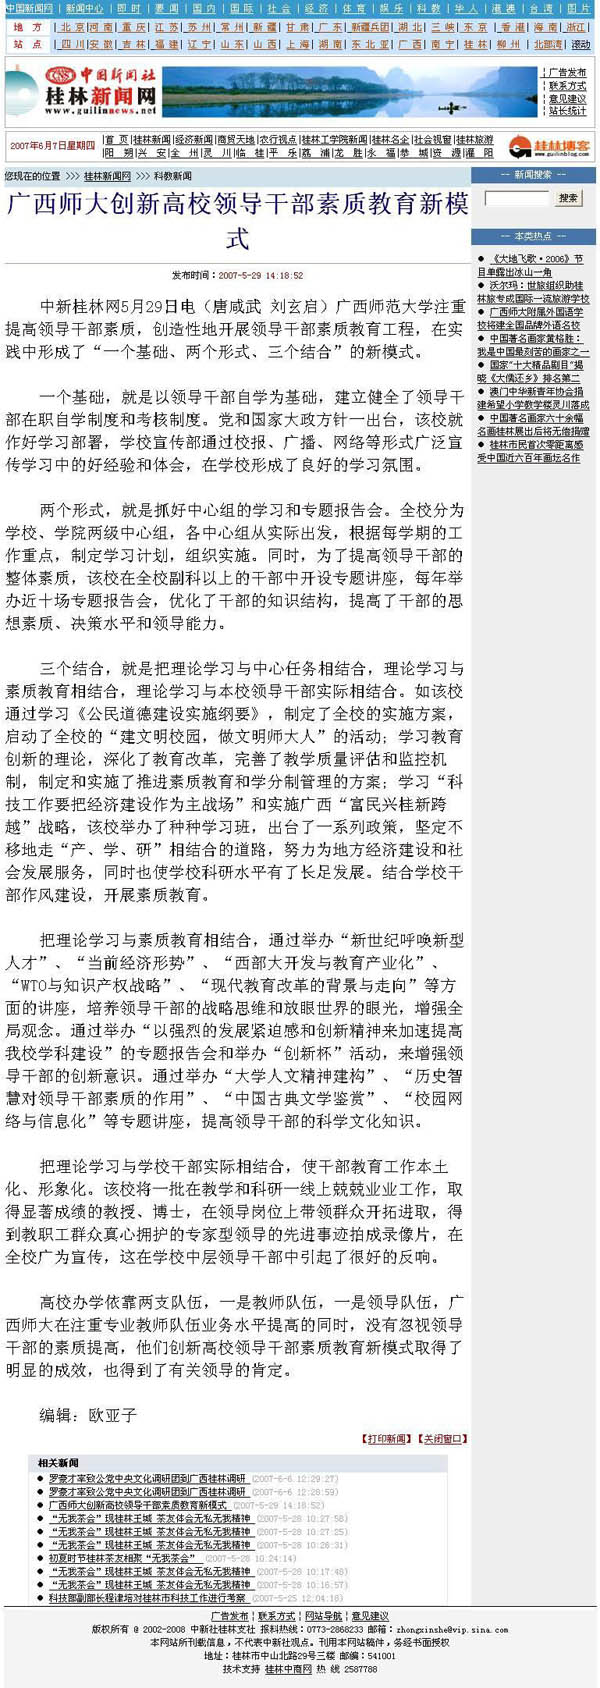 中国新闻社报道我校创新高校领导干部素质教育新模式。